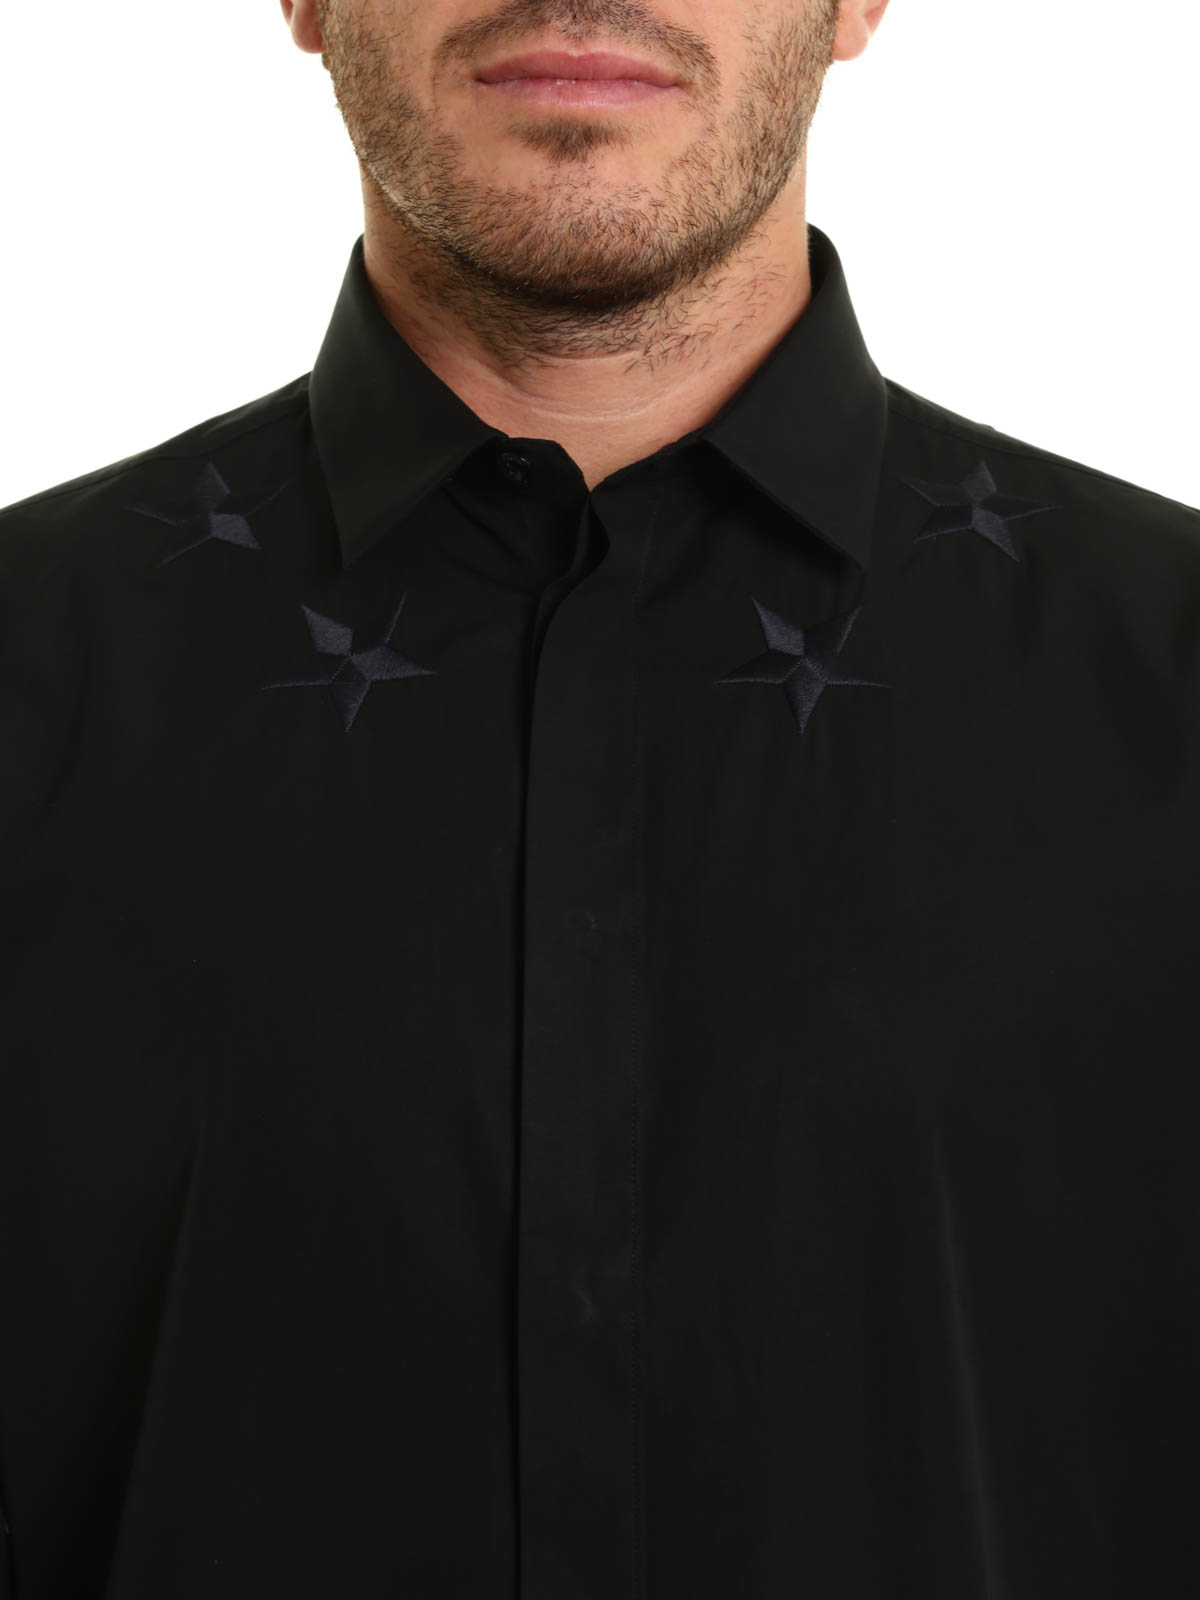 Givenchy - Camisa Negra Para Hombre - Camisas - 17S6061300001 | iKRIX.com